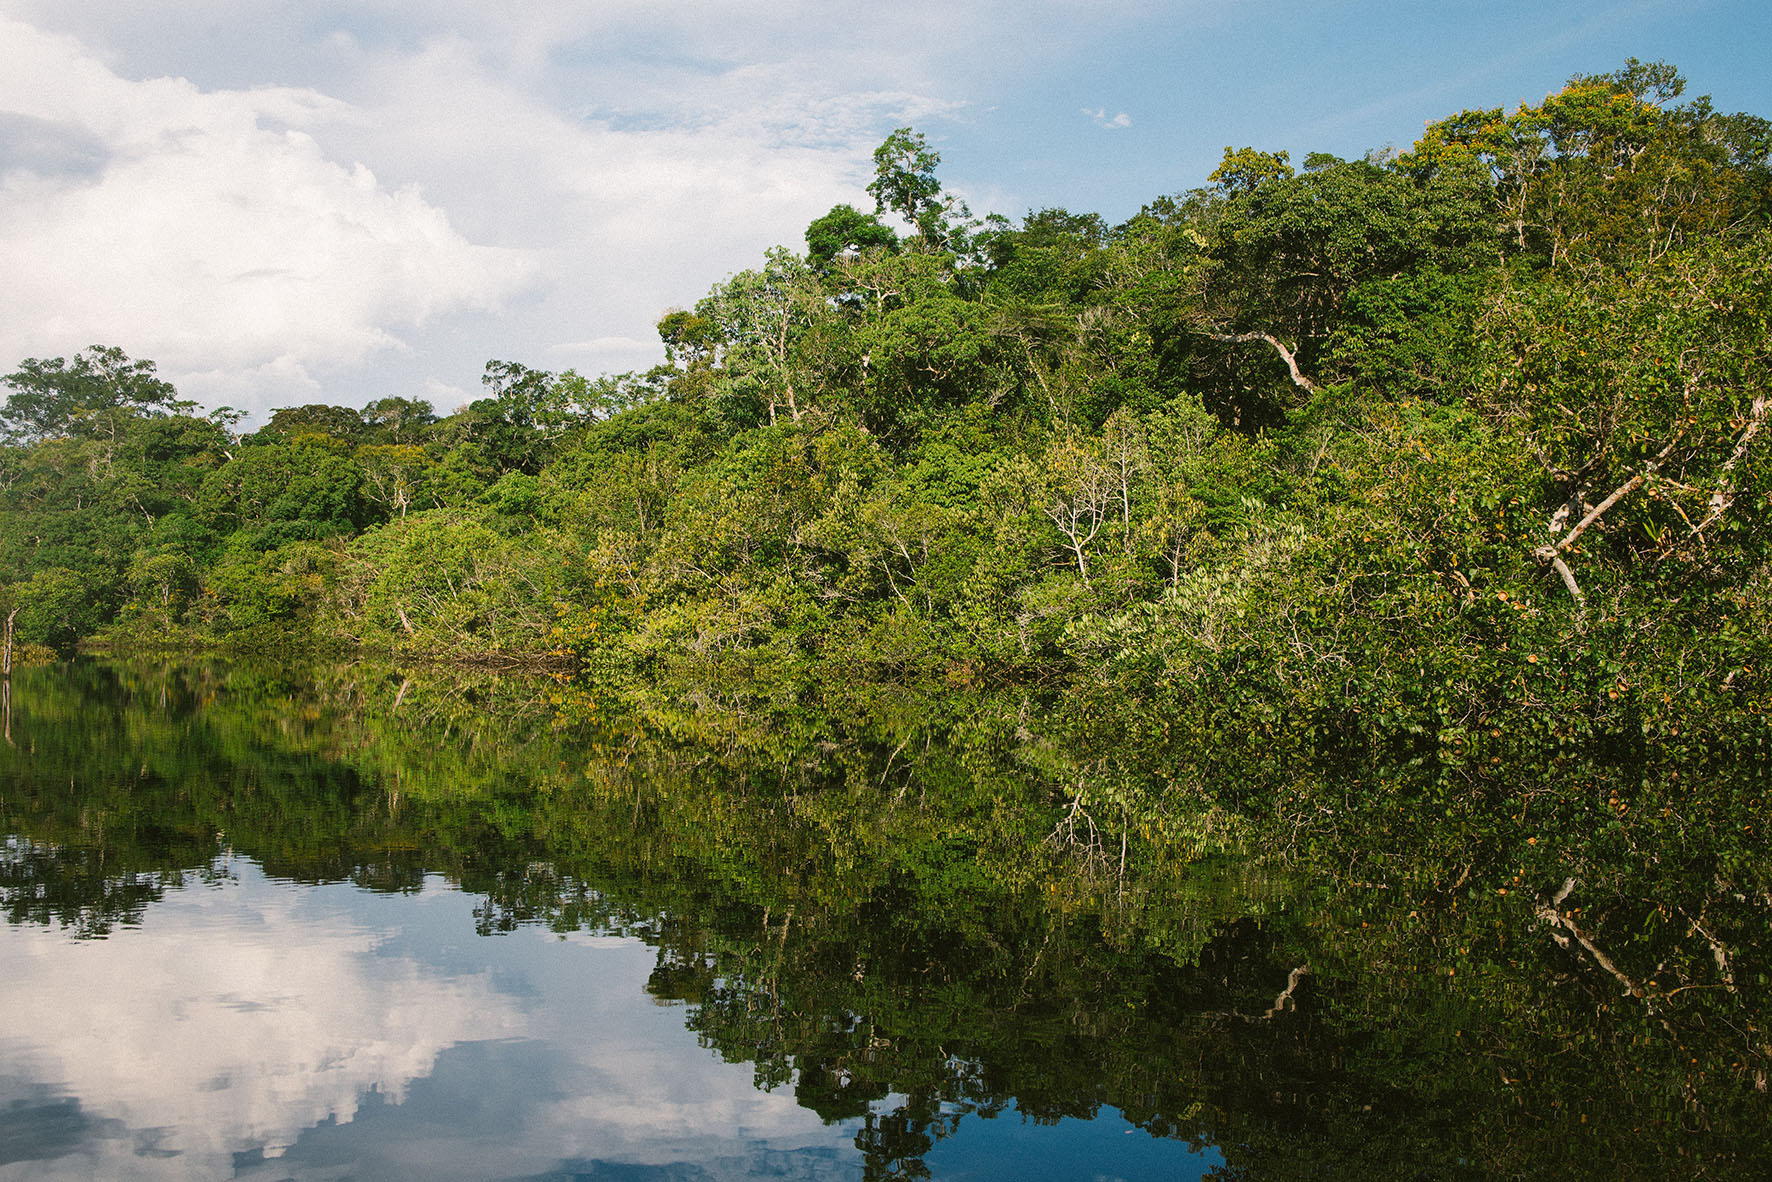 La deforestación en la Amazonía es cada vez más evidente / Natalia Segato